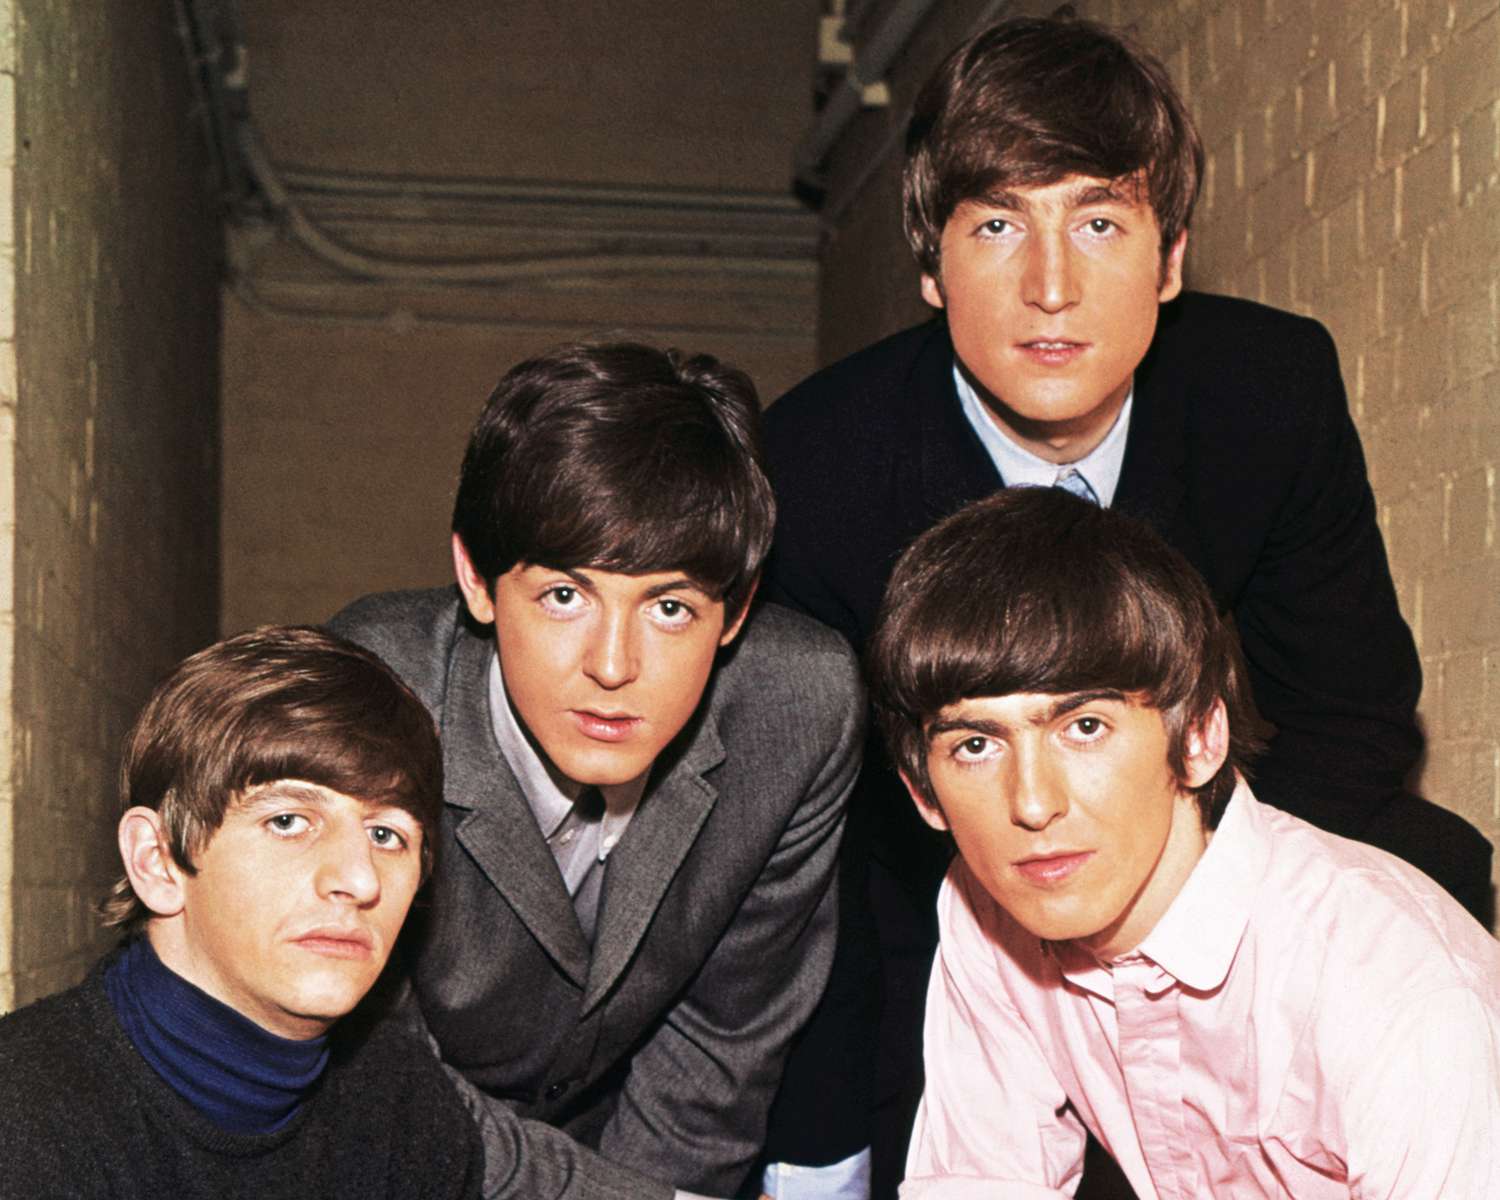 The Beatles, circa 1965